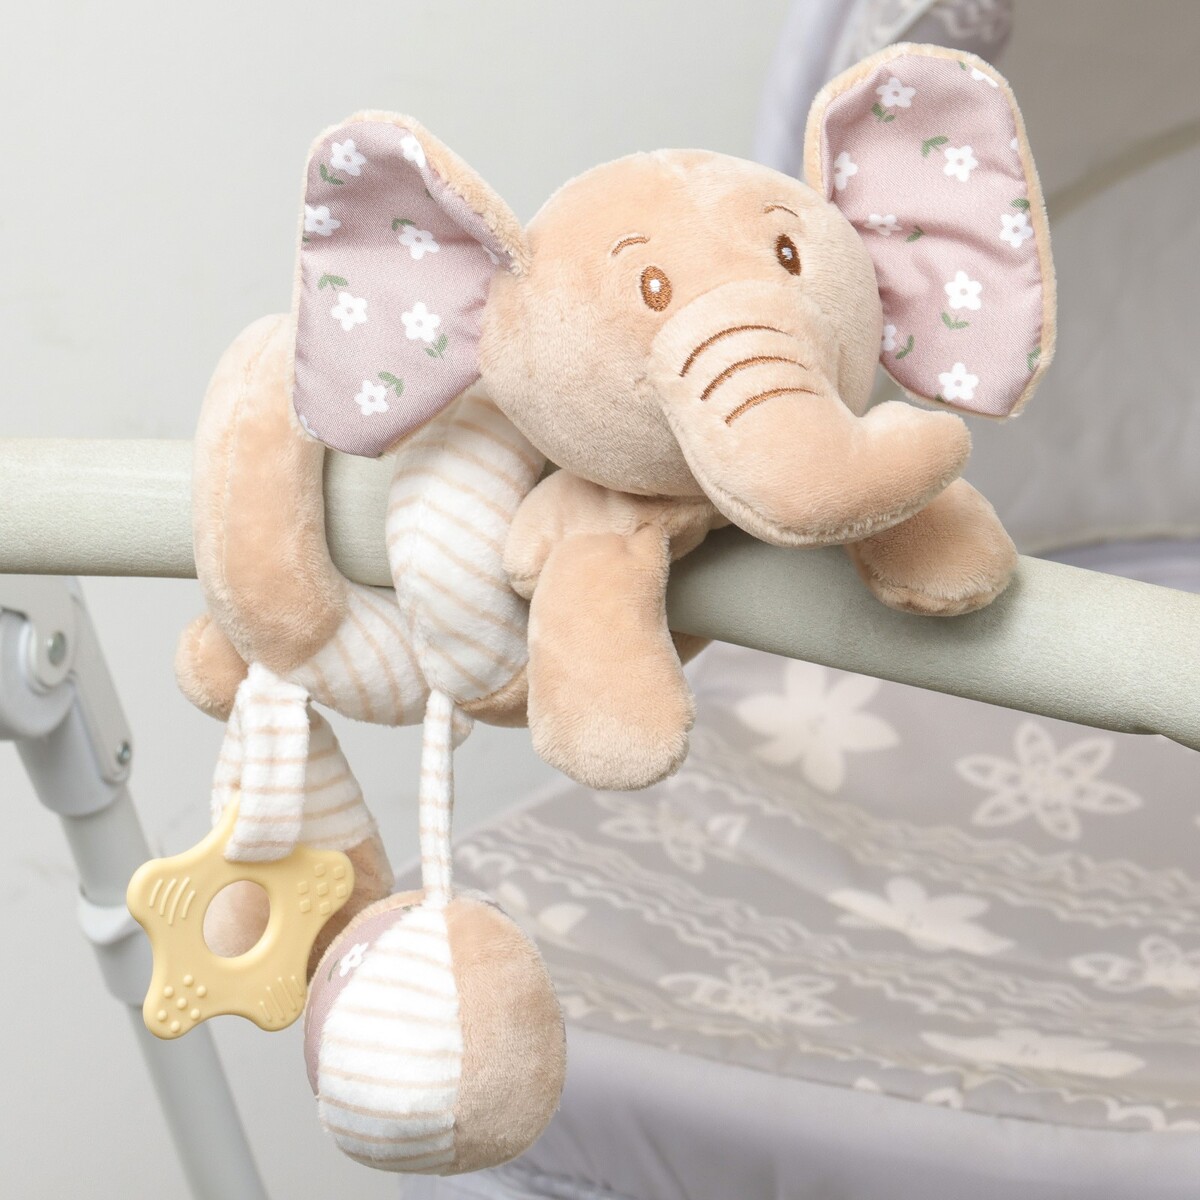 Растяжка - спираль с игрушками дуга на коляску / кроватку для малышей 0+ дуга жирафики с подвесками лето